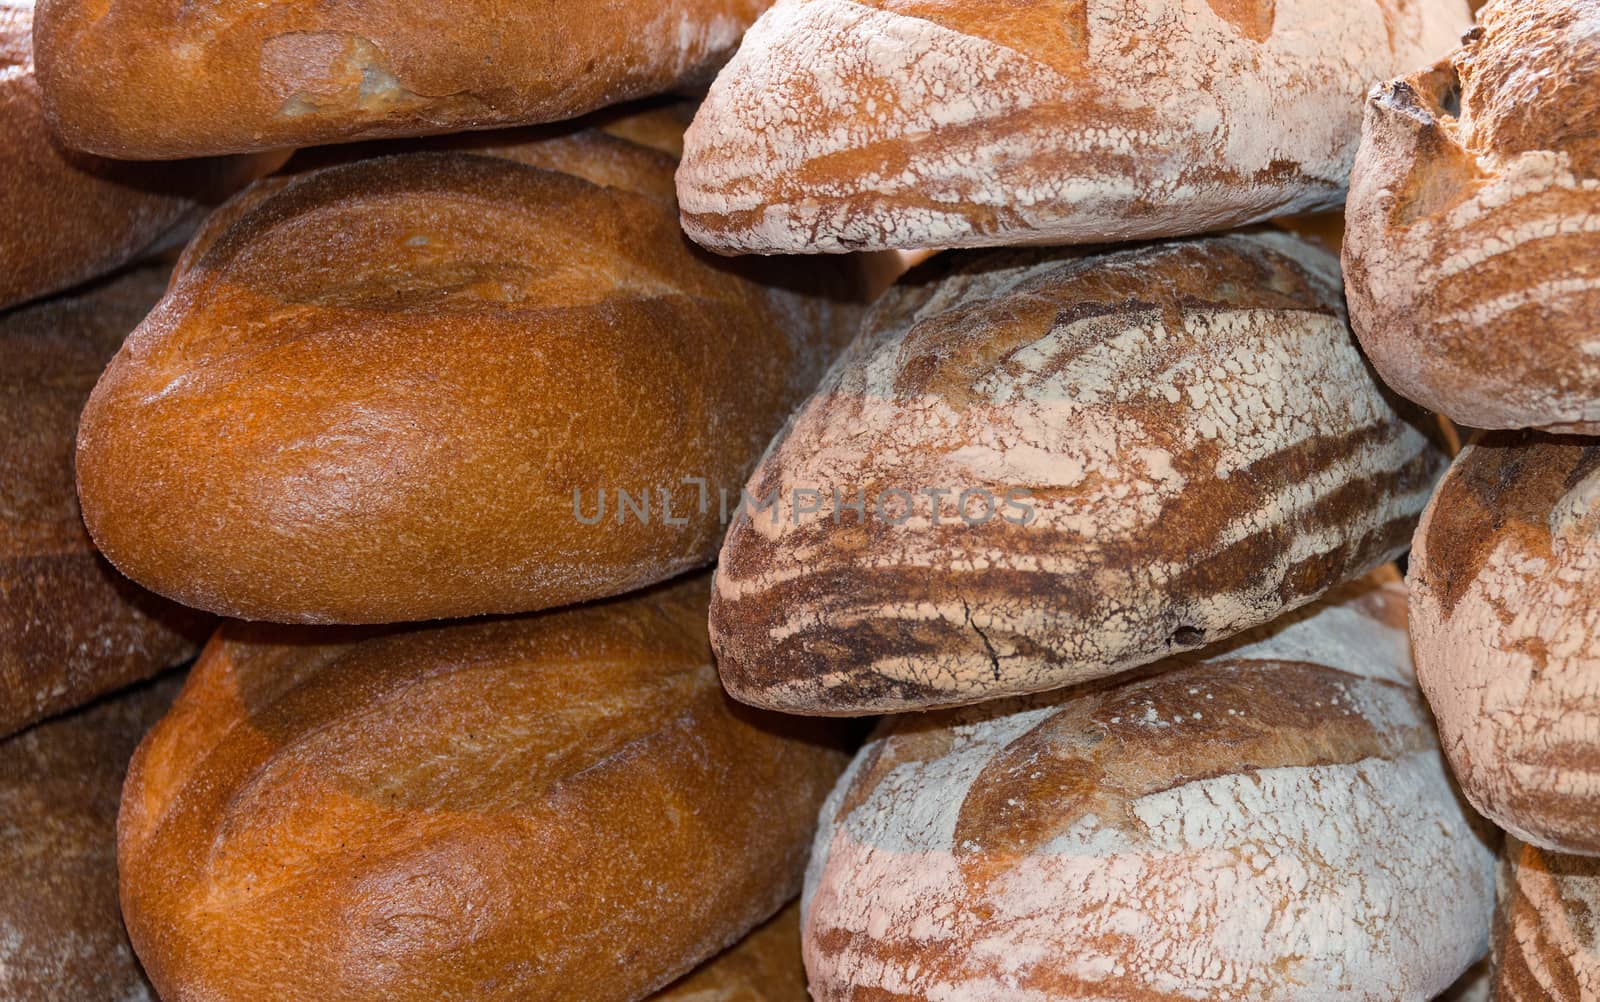 Freshly Baked Bread